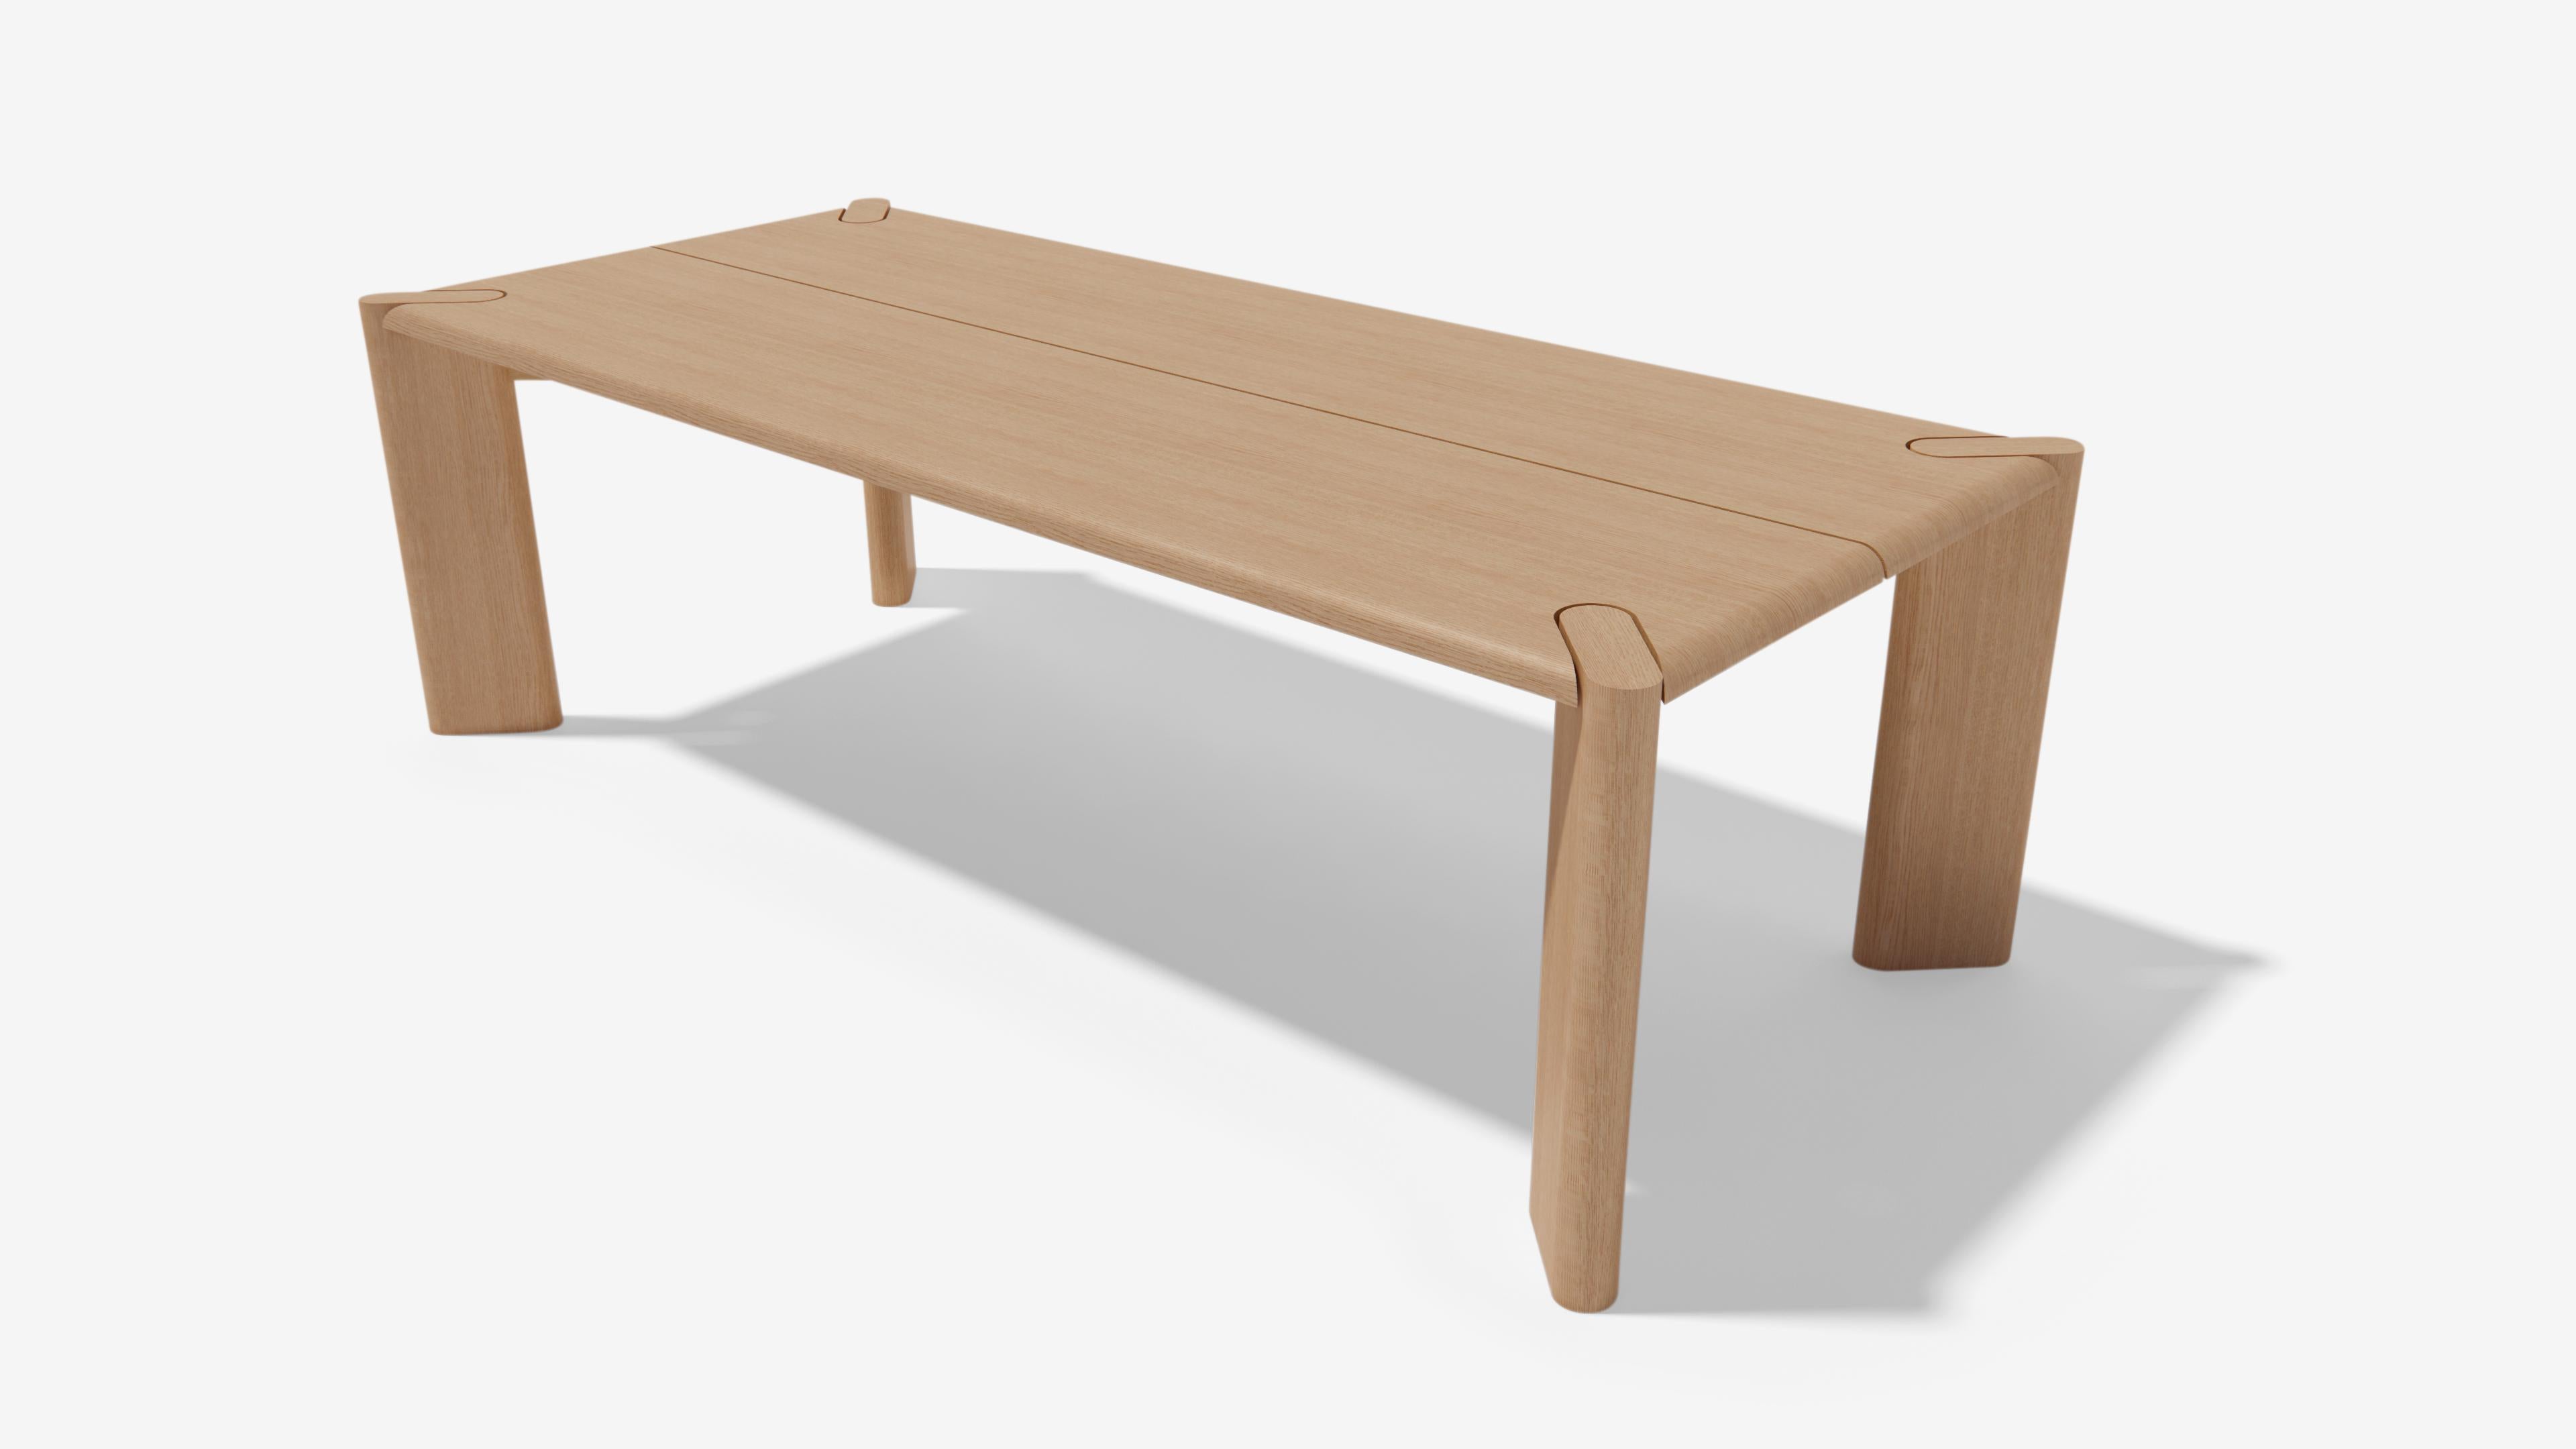 La table de salle à manger Hoc est une table audacieuse et distinguée qui est un bel exemple de symétrie et d'équilibre. Avec ses arêtes radiales raffinées et ses grands pieds sculpturaux, cette forme donnera une belle impression de rassemblement